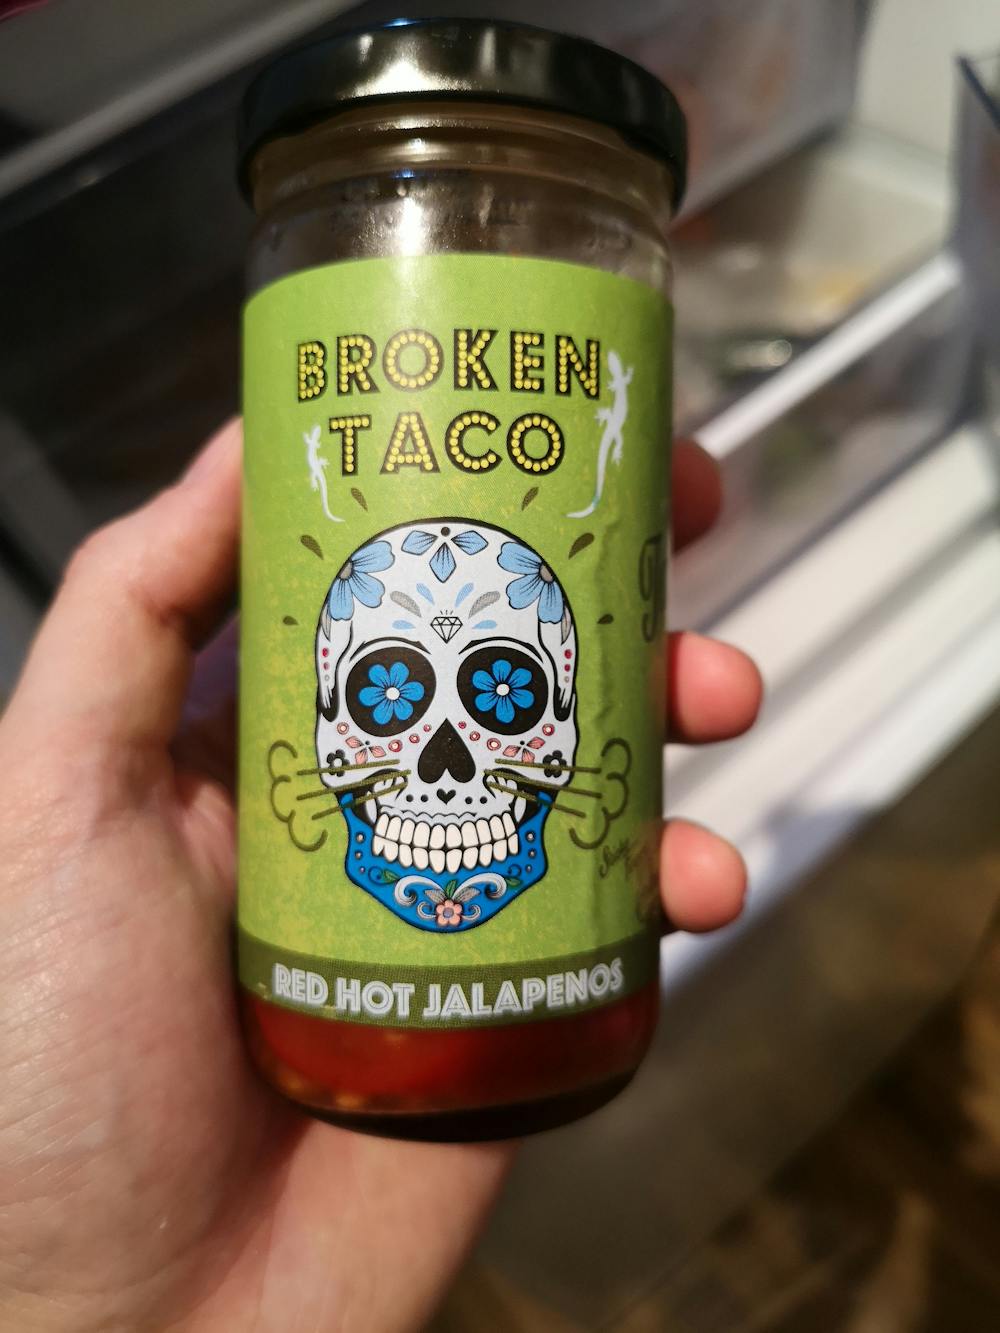 Red hot jalapenos, Broken taco